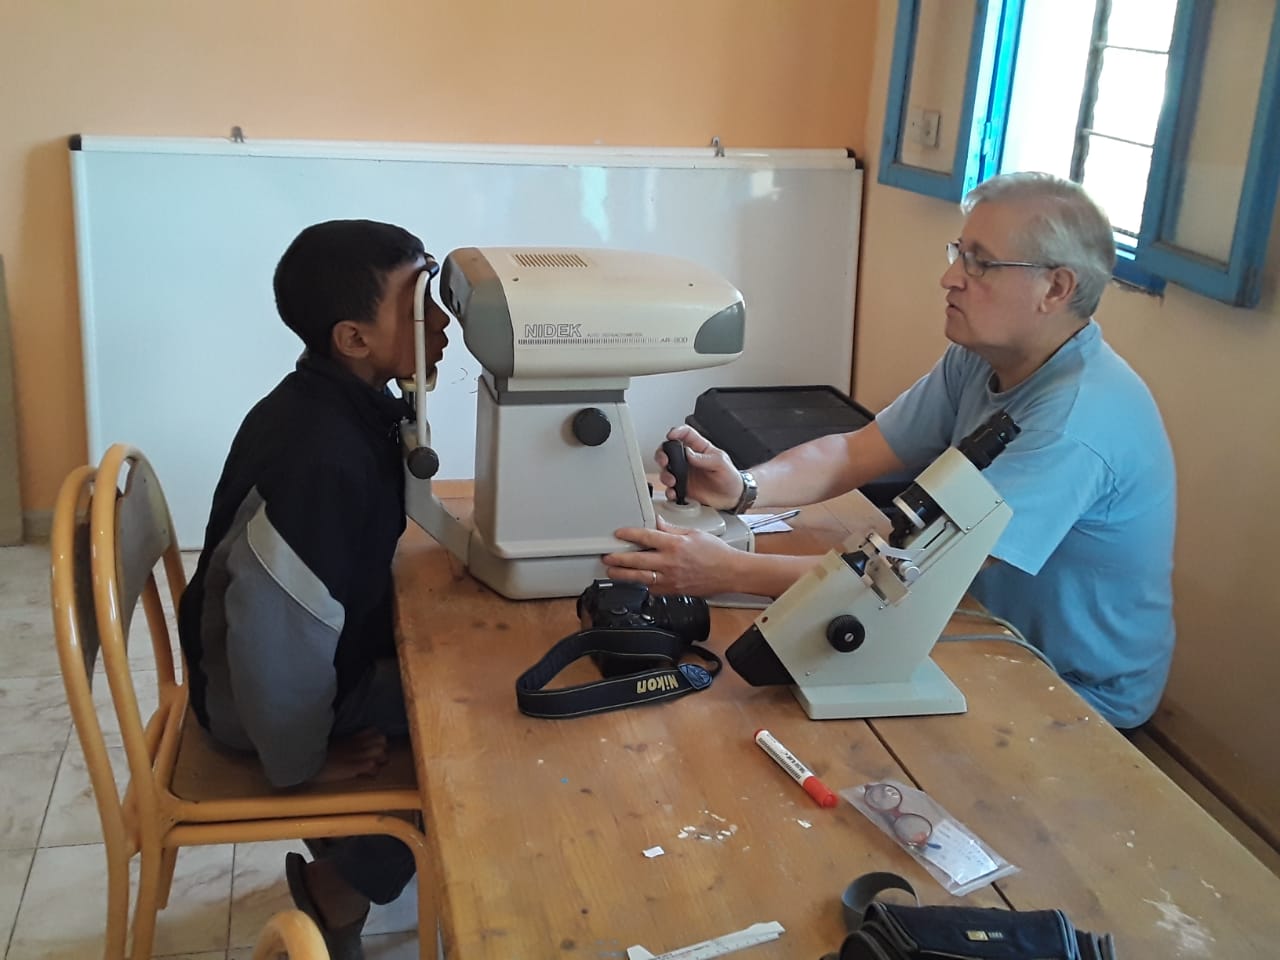 تنظيم قافلة طبية لتصحيح البصر وتوزيع النظارات لتلاميذ بإقليم كلميم